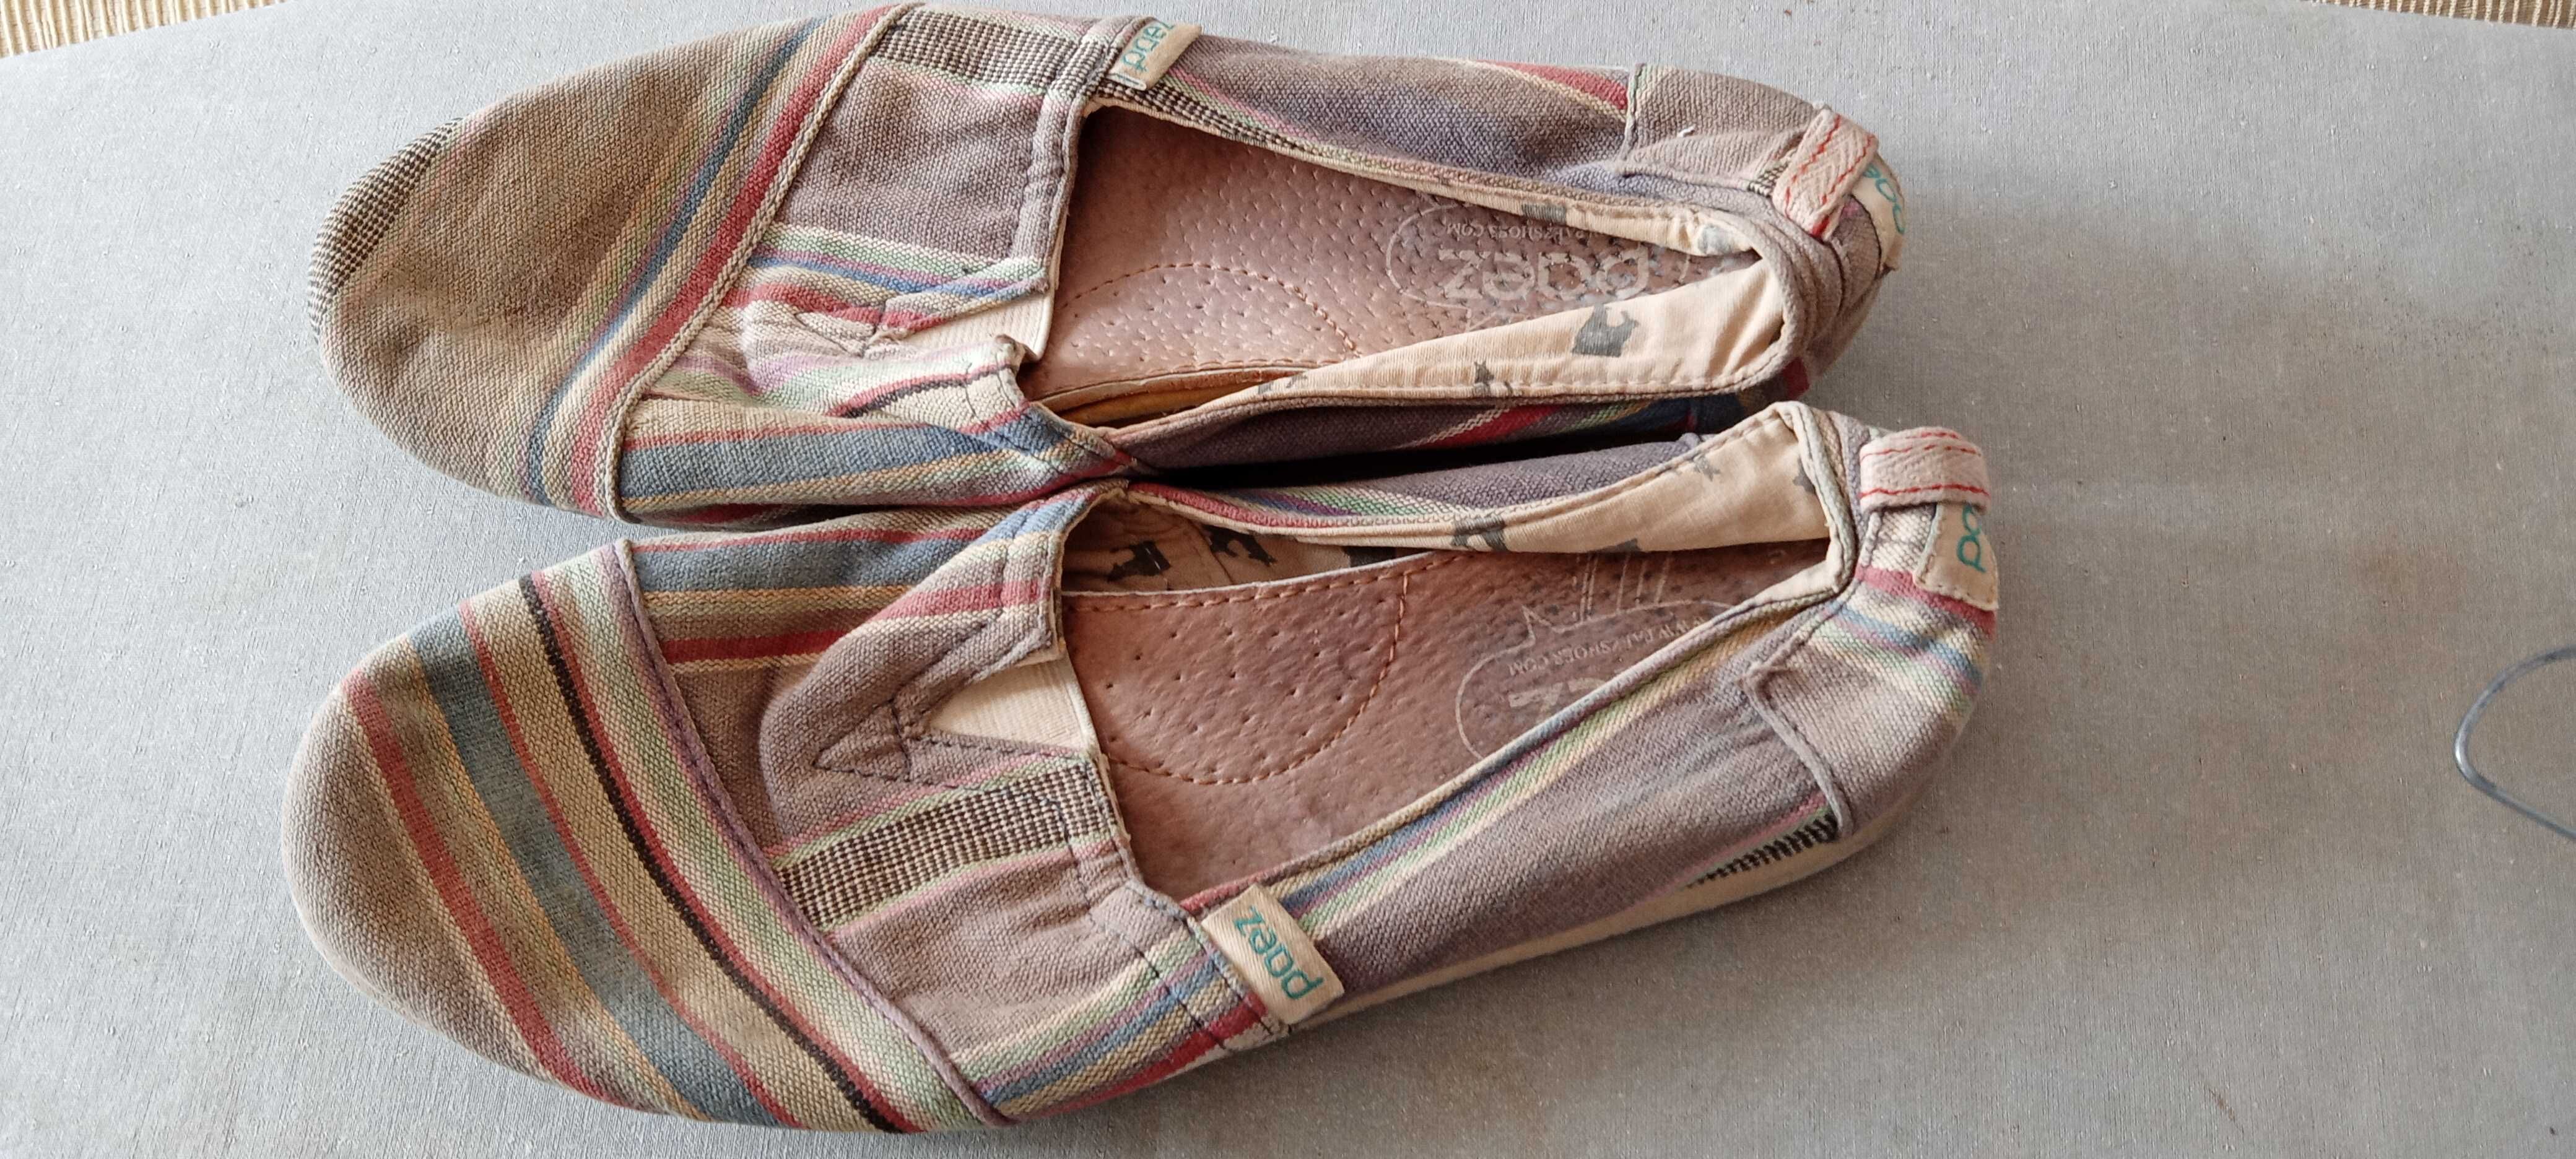 Calças de Ganga Massimo Dutti + oferta sapatos de praia.

Unisexo